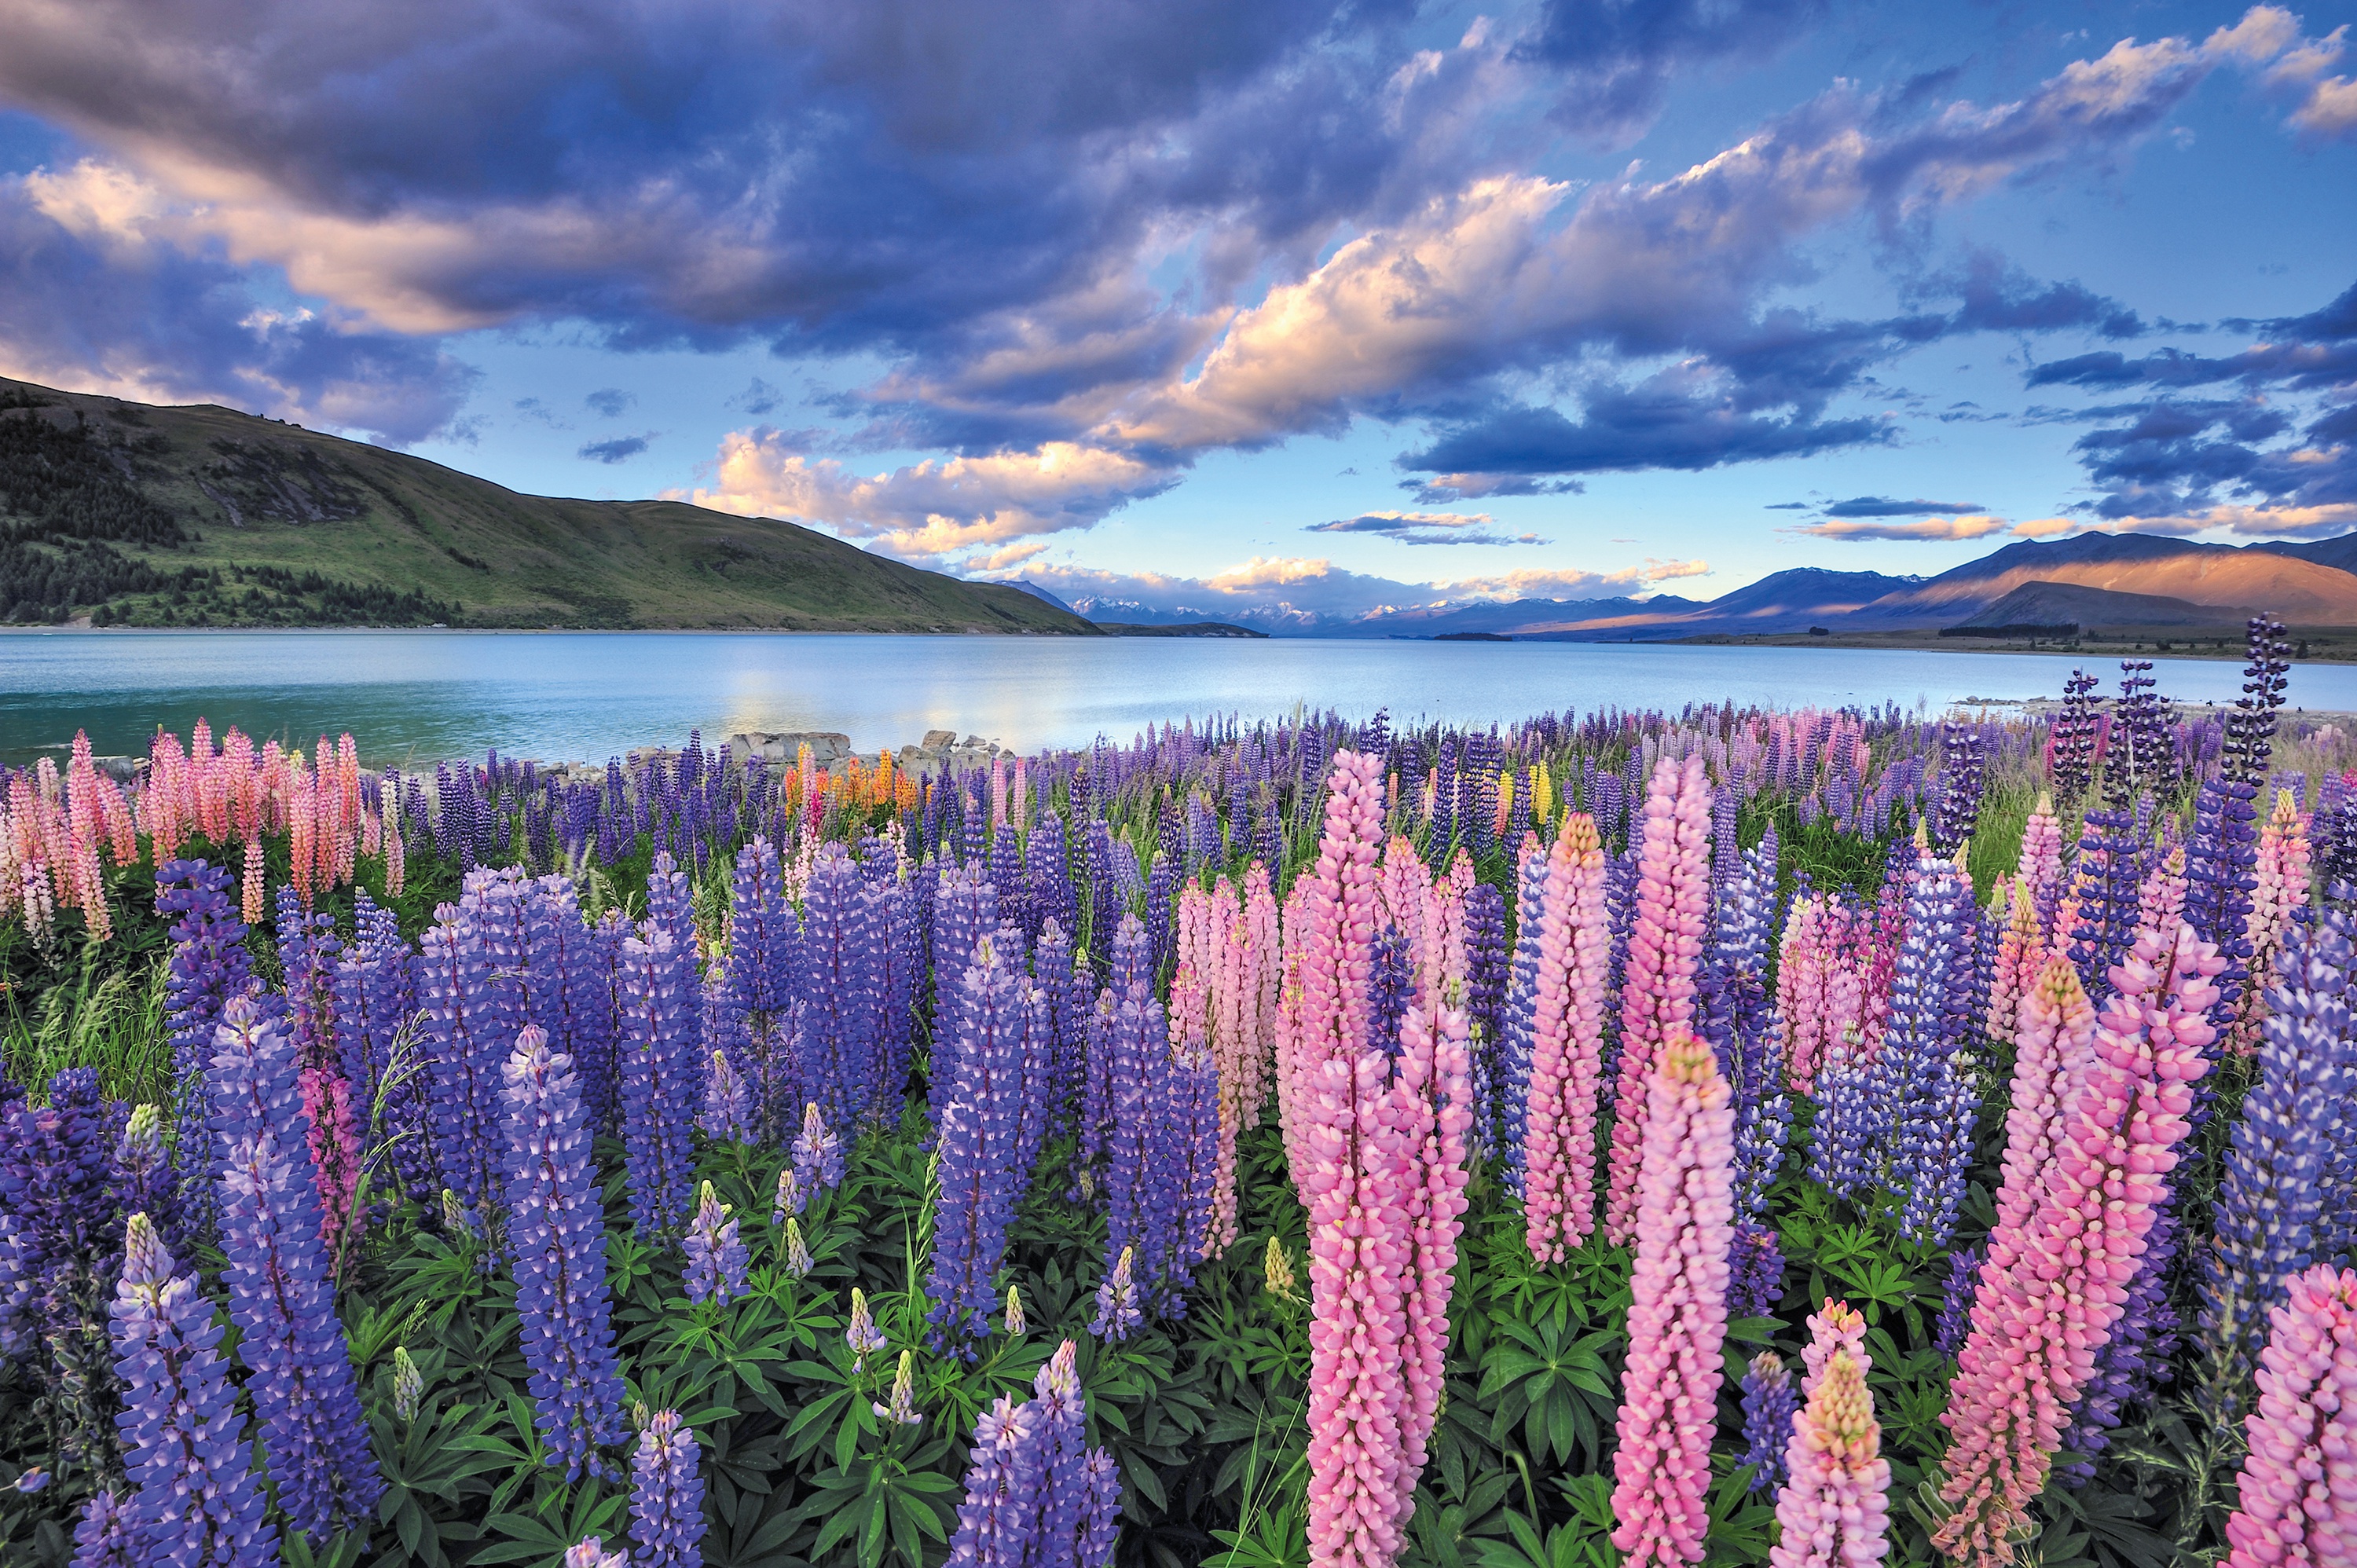 Самая красивая картинка природы в мире. Текапо новая Зеландия. Долина люпинов остров Южный новая Зеландия. Озеро Текапо. Цветение люпинов новая Зеландия.